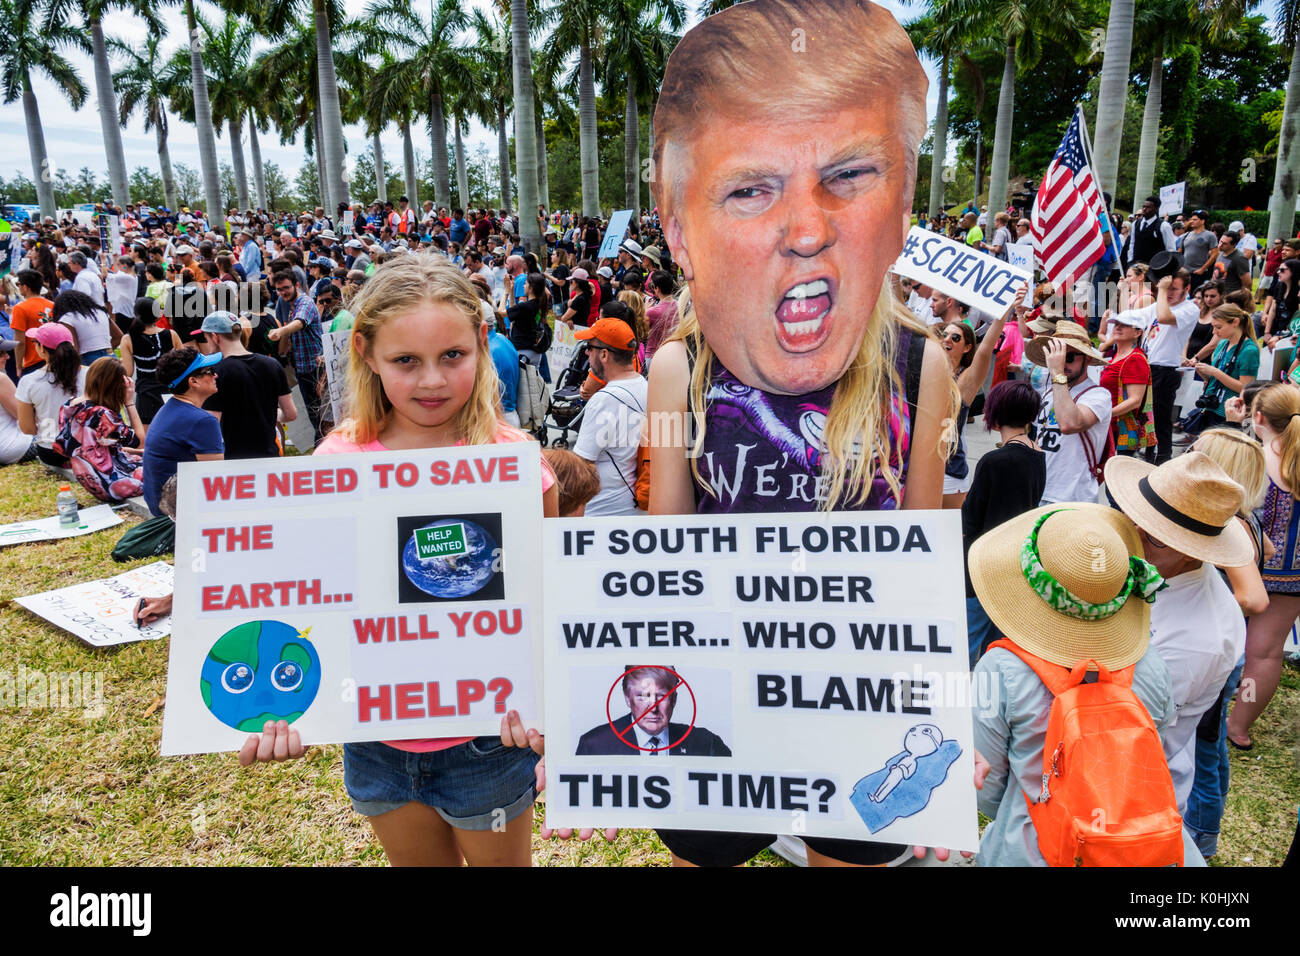 Miami Florida, Museumspark, Marsch für Wissenschaft, Protest, Kundgebung, Schild, Poster, Protestler, Mädchen, Mädchen Kinder Kinder Kinder Jugendliche, Studenten p Stockfoto